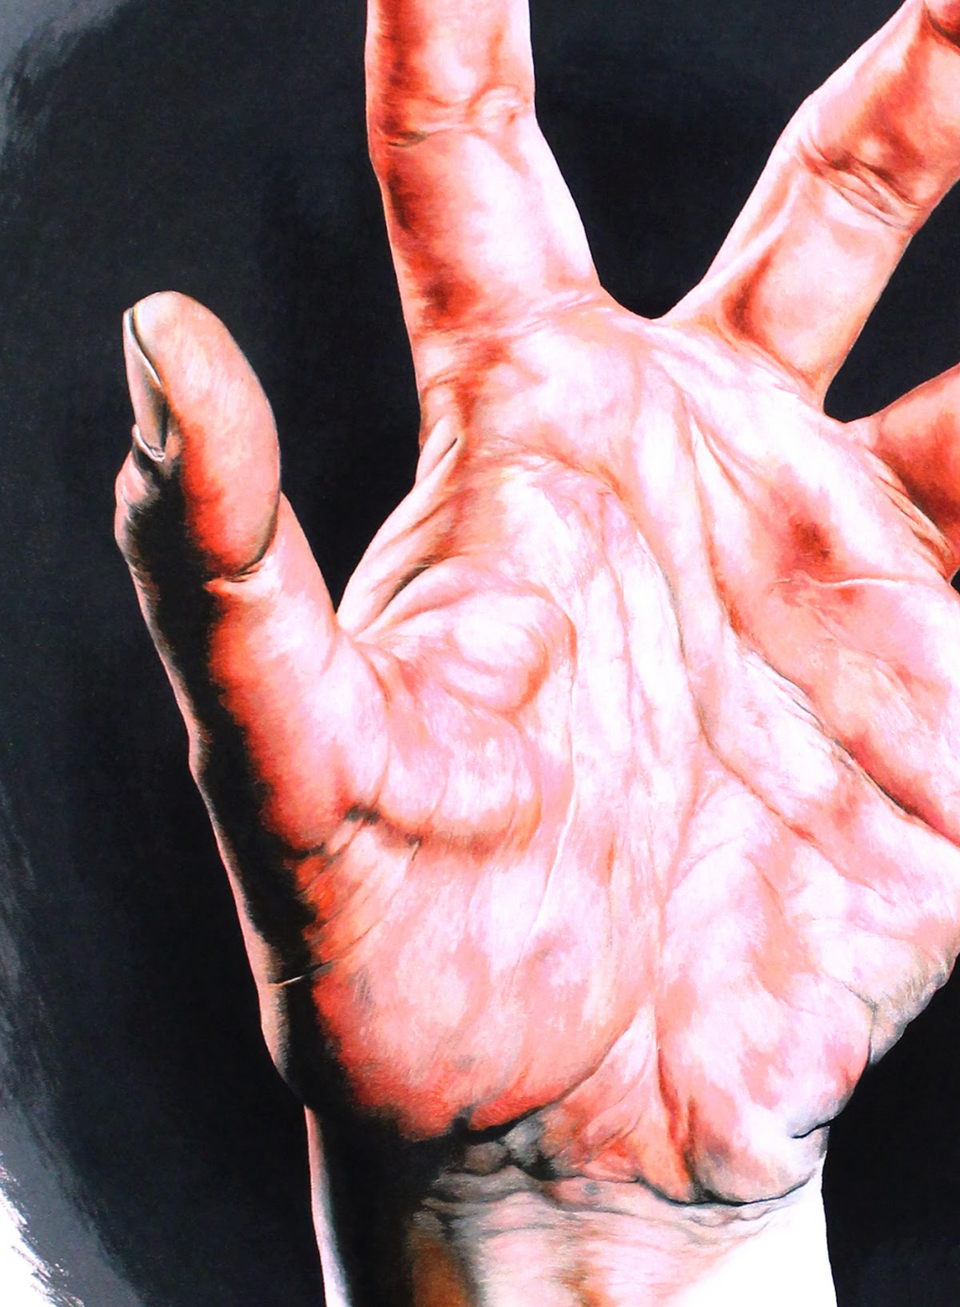 Russ White - The Hand